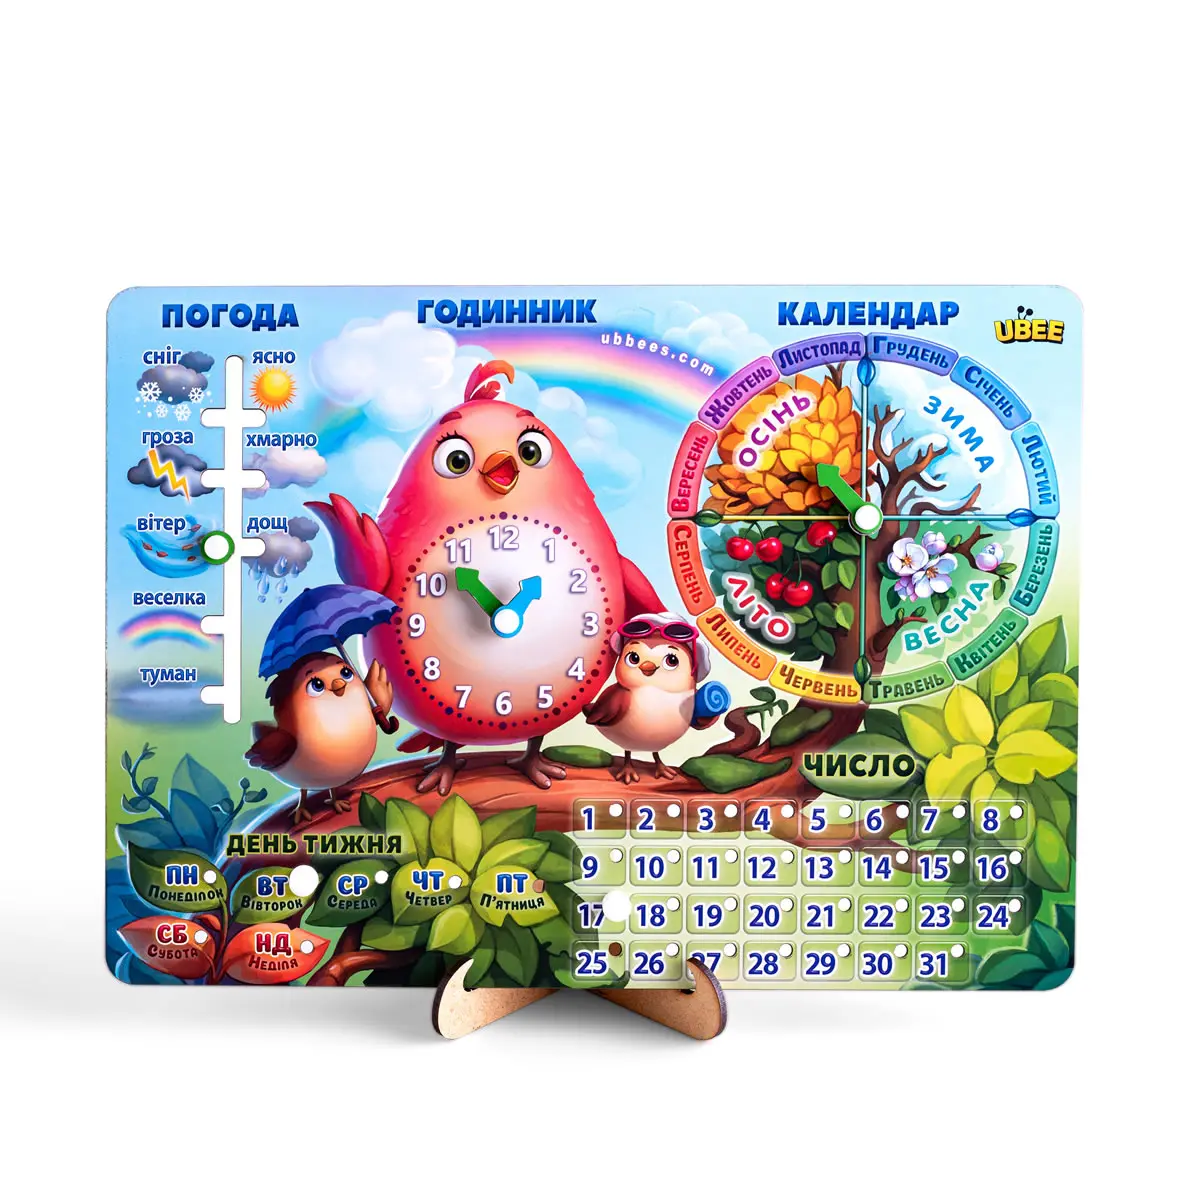 "Kalender - 2" (Vogel) ukrainische Sprache